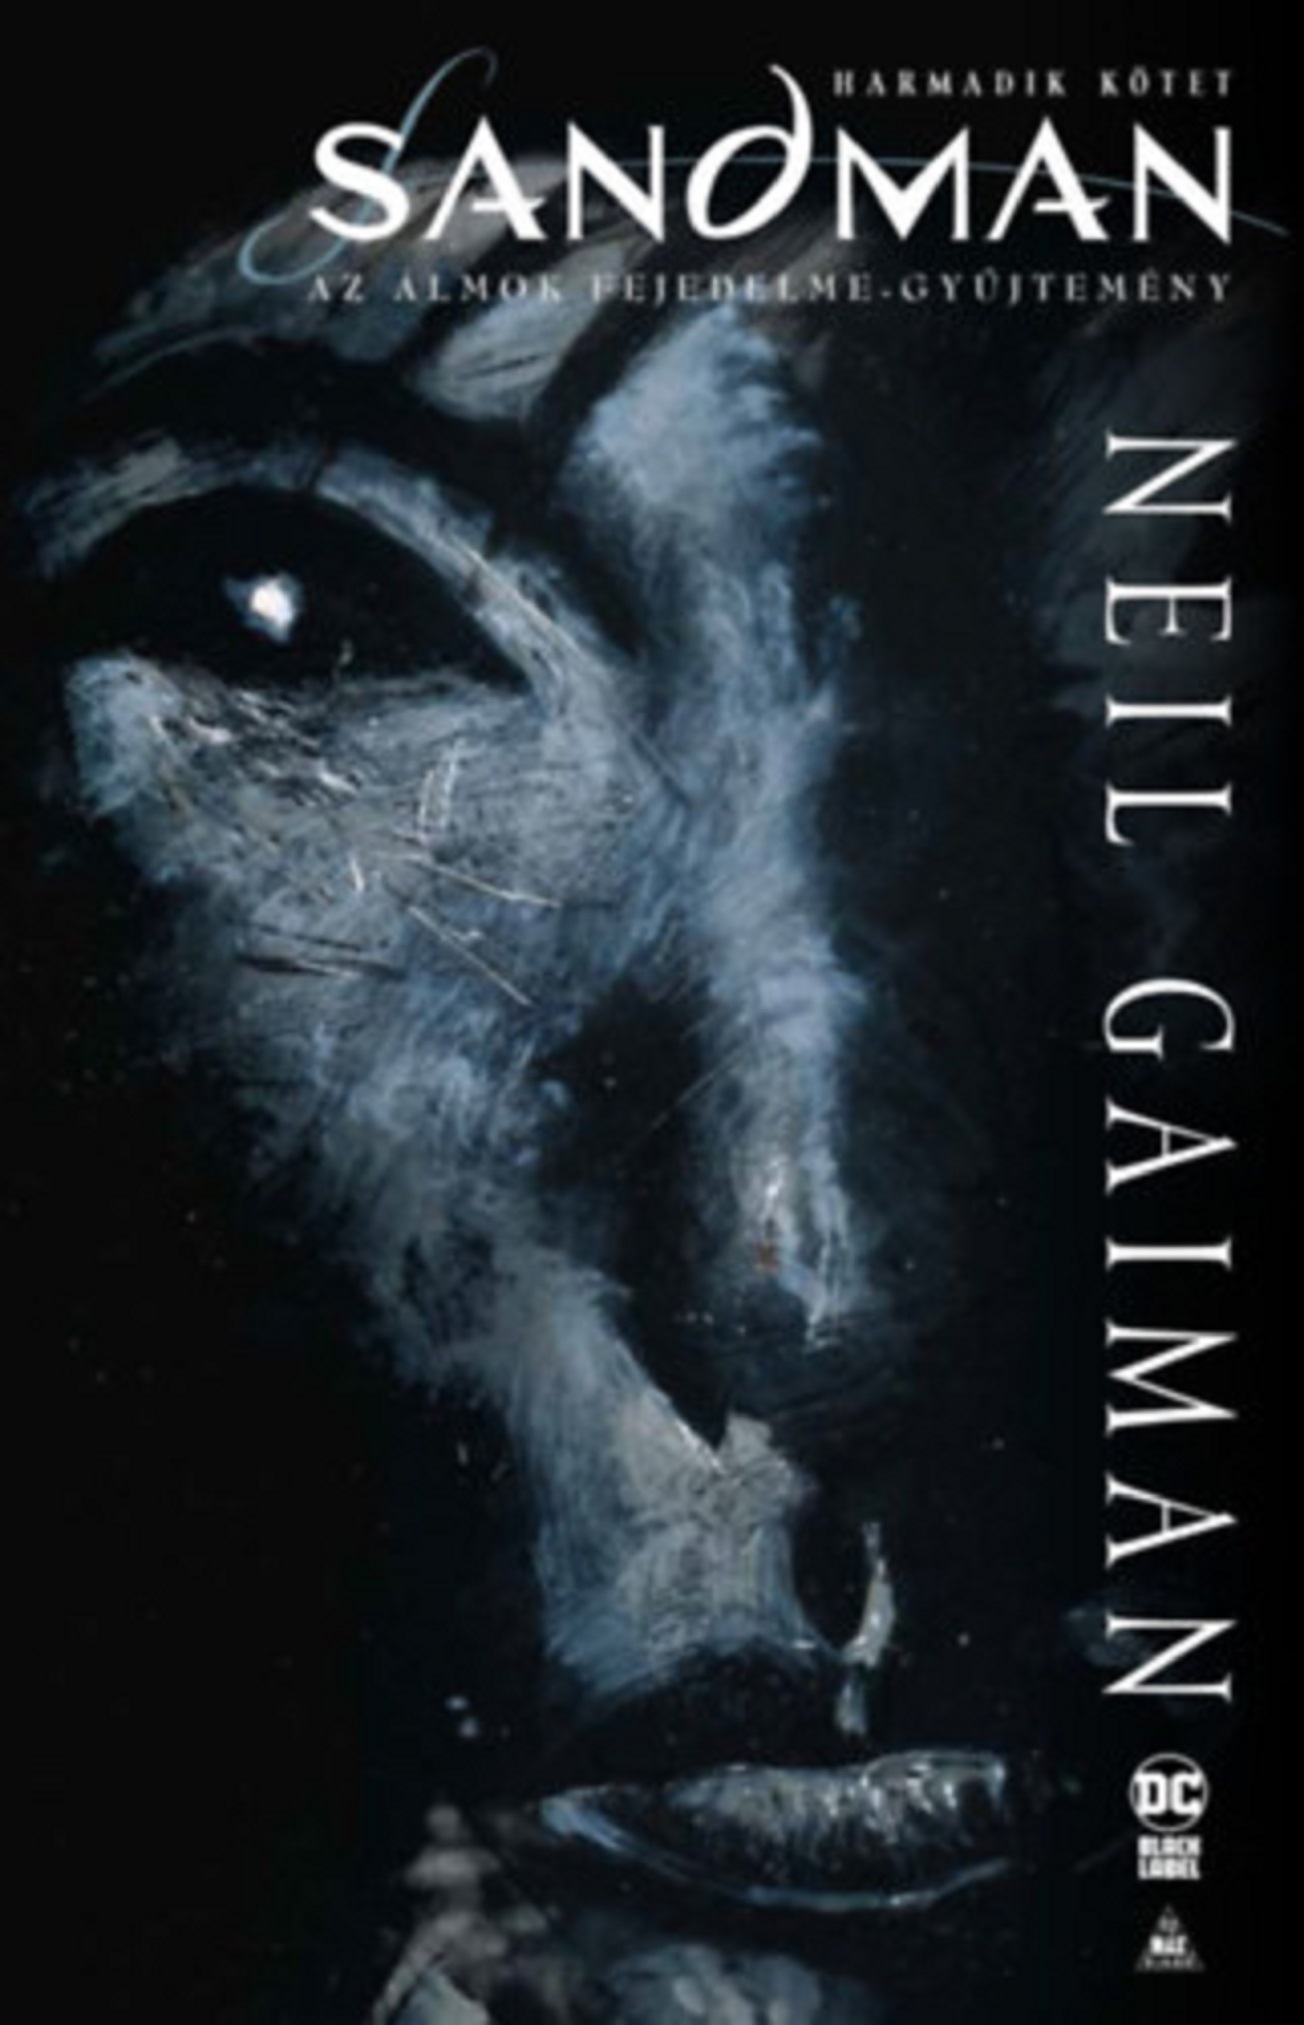 Vezi detalii pentru Sandman - Harmadik kötet | Neil Gaiman